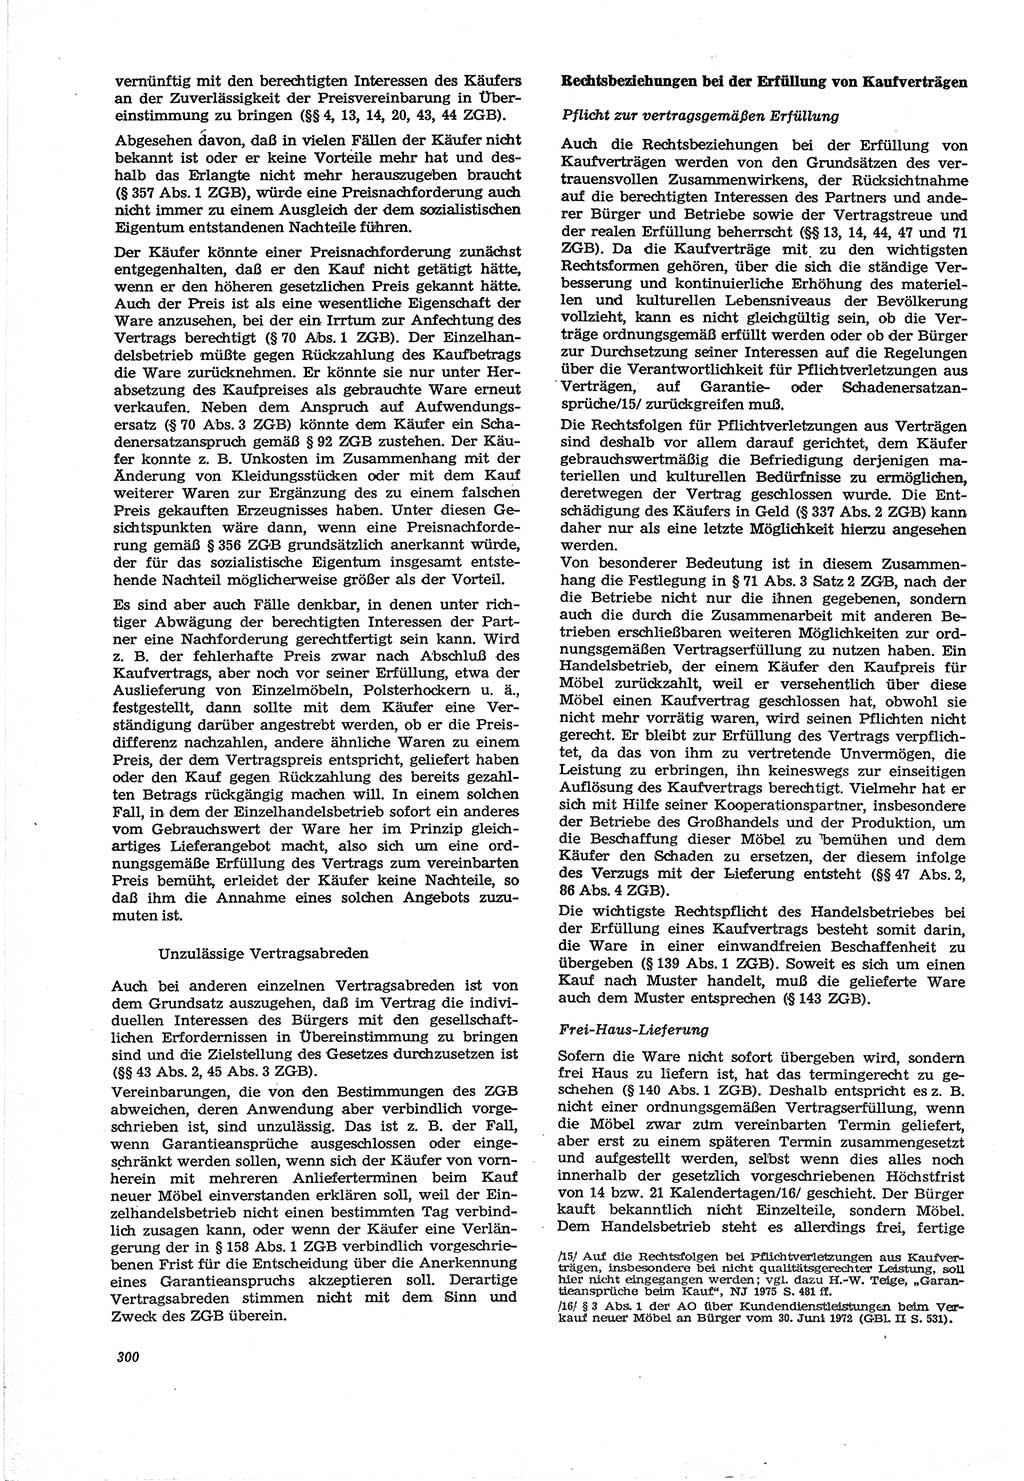 Neue Justiz (NJ), Zeitschrift für Recht und Rechtswissenschaft [Deutsche Demokratische Republik (DDR)], 30. Jahrgang 1976, Seite 300 (NJ DDR 1976, S. 300)